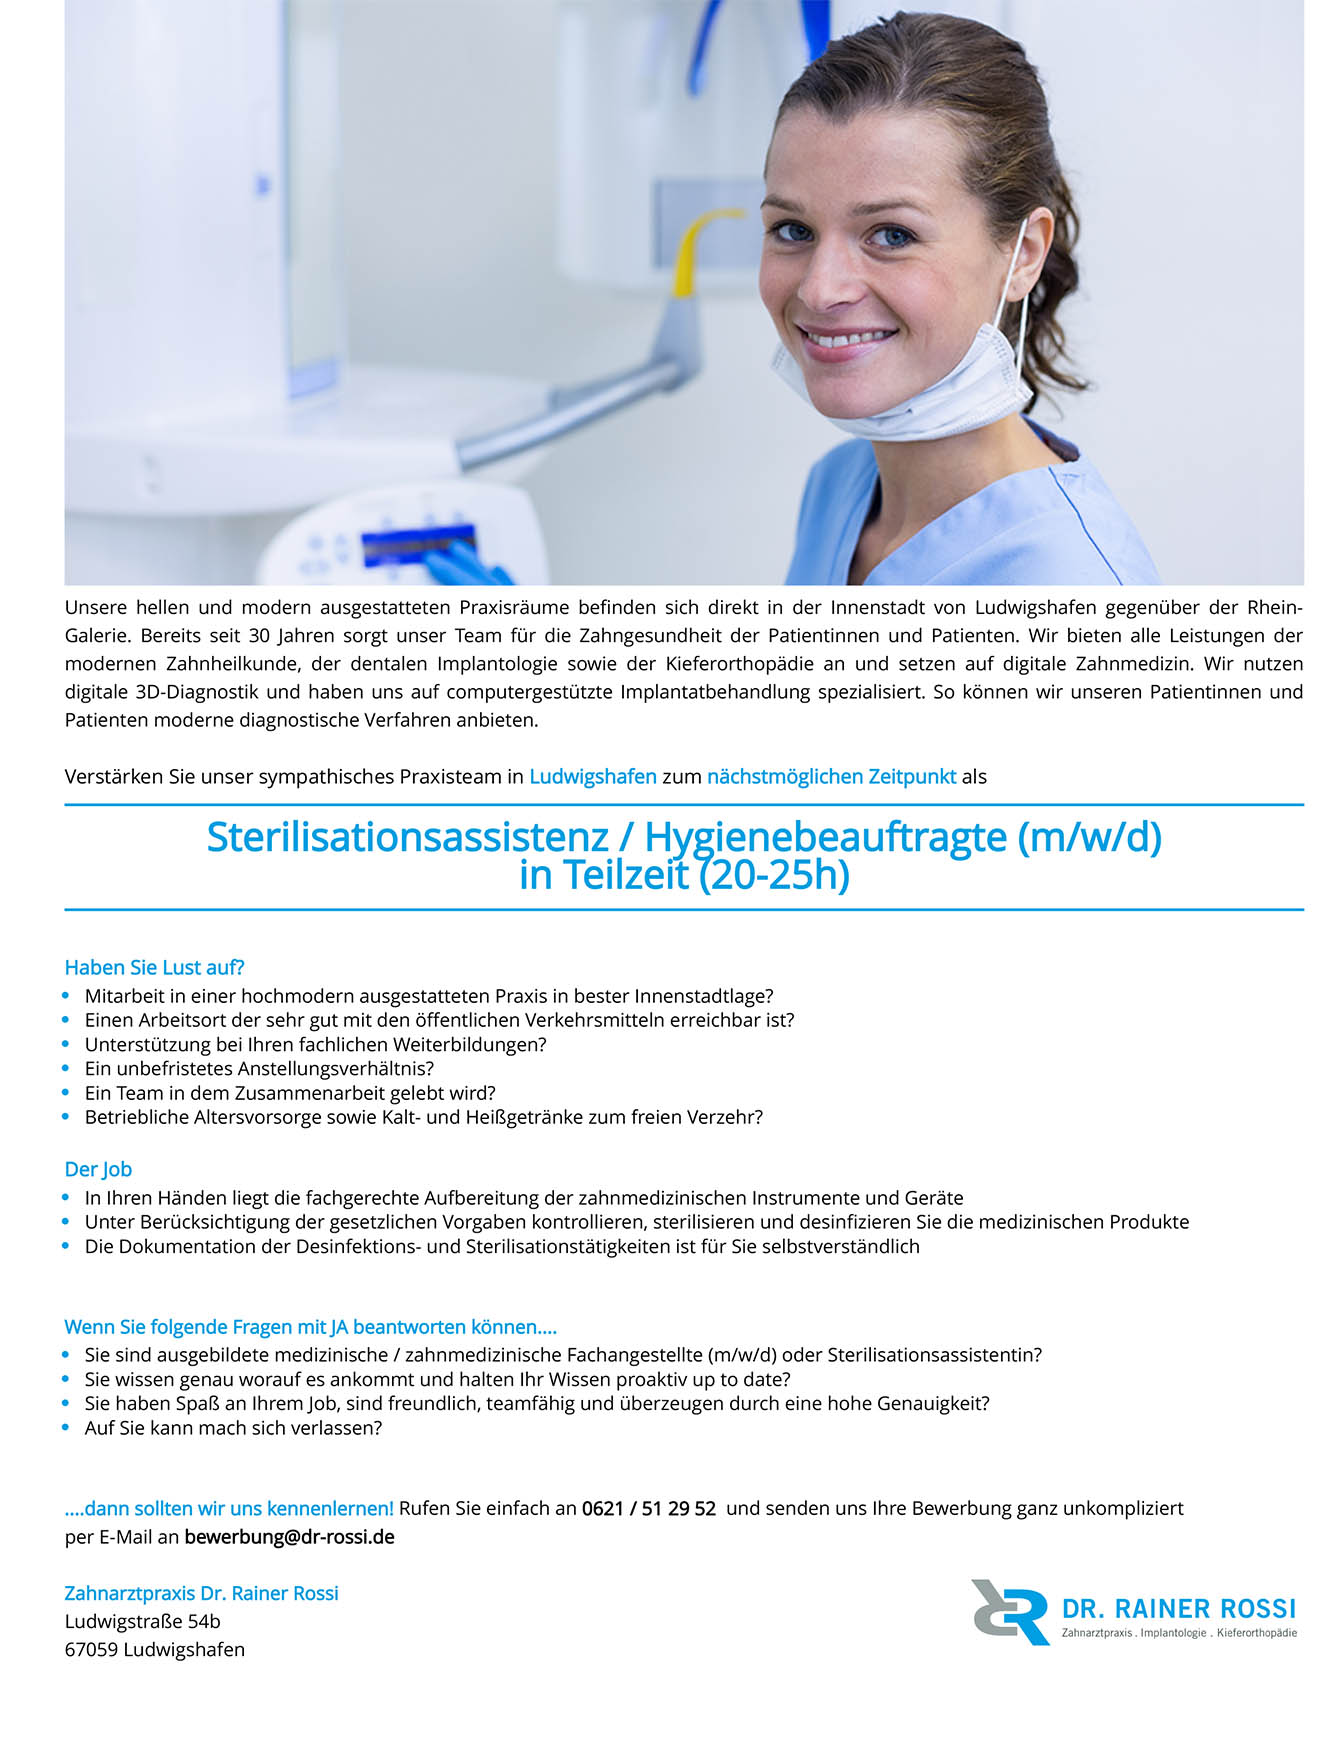 Sterilisationsassistenz / Hygienebeauftragte (m/w/d)